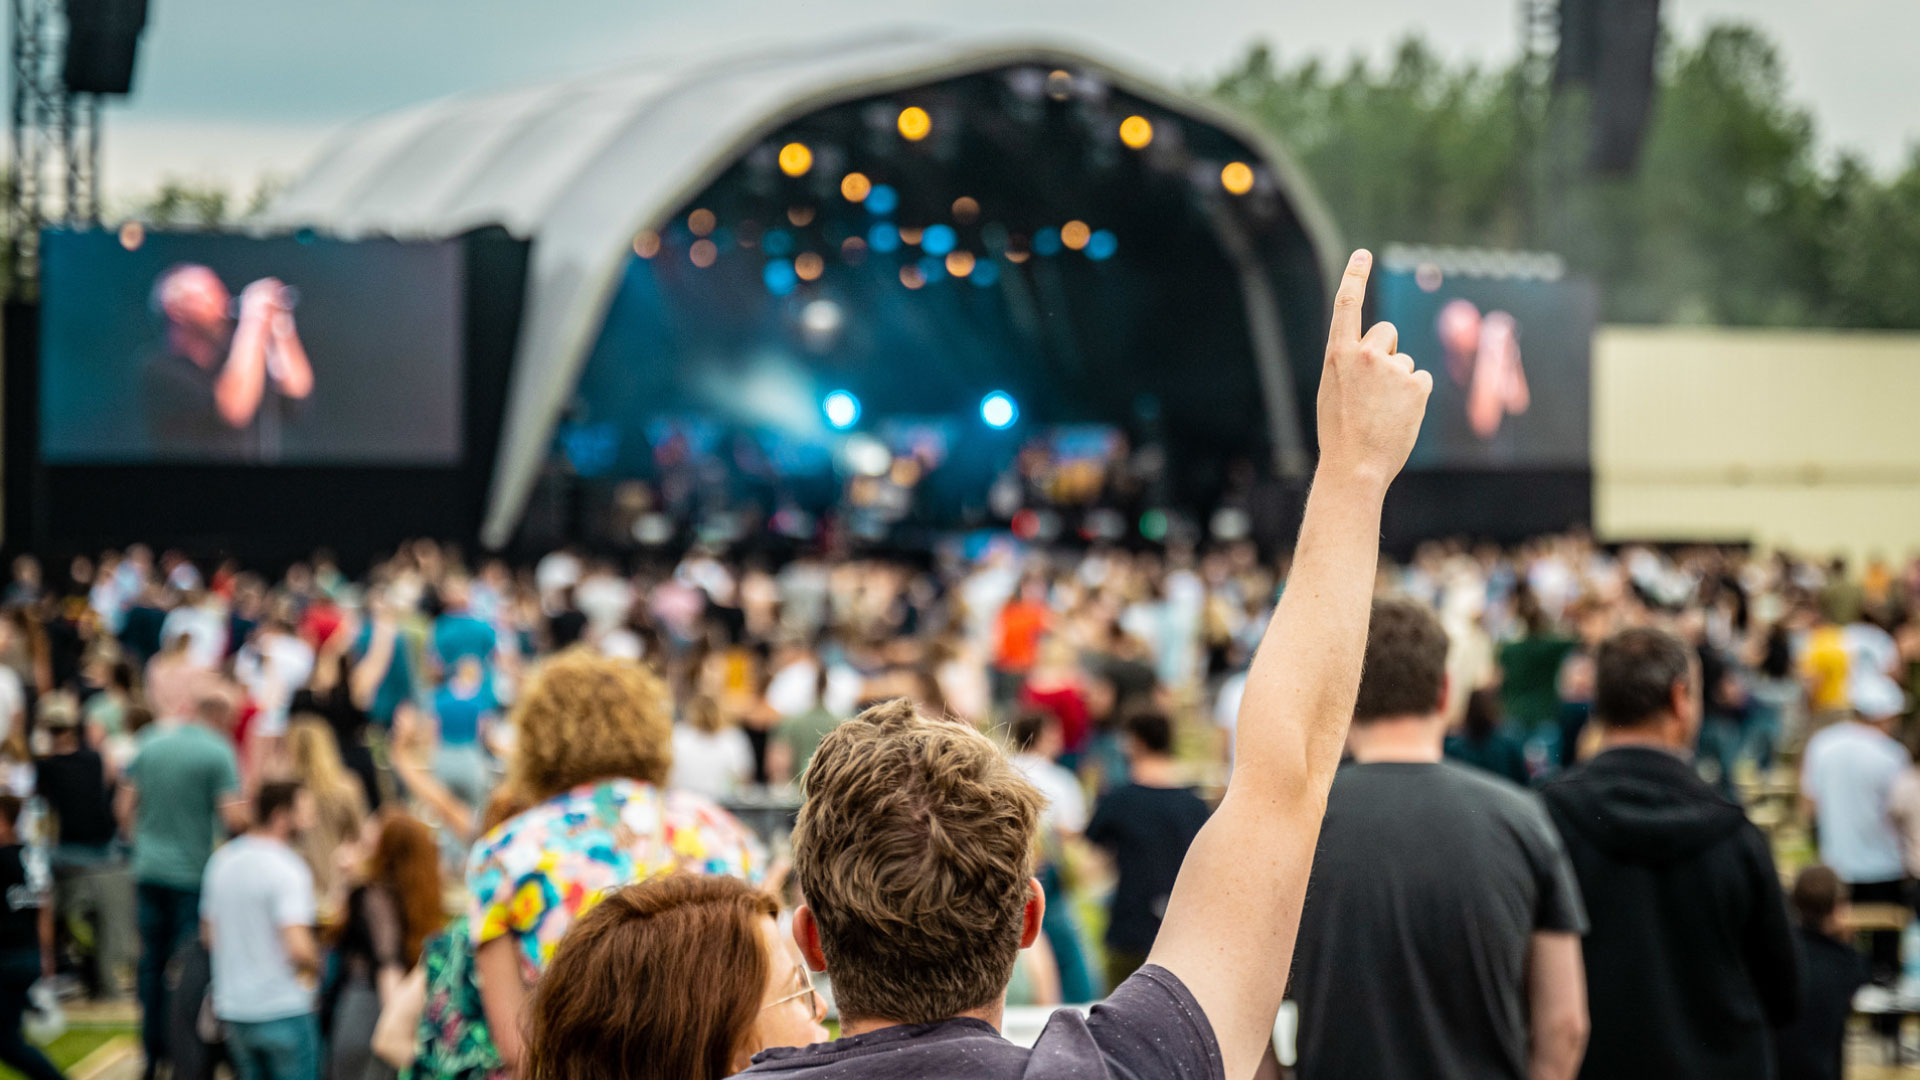 Temporada de festivales en Bélgica. PRG apoya el #PRGSummerofMusic con tecnología de primera clase en los escenarios de los festivales. No dude en ponerse en contacto con nuestros expertos en festivales.